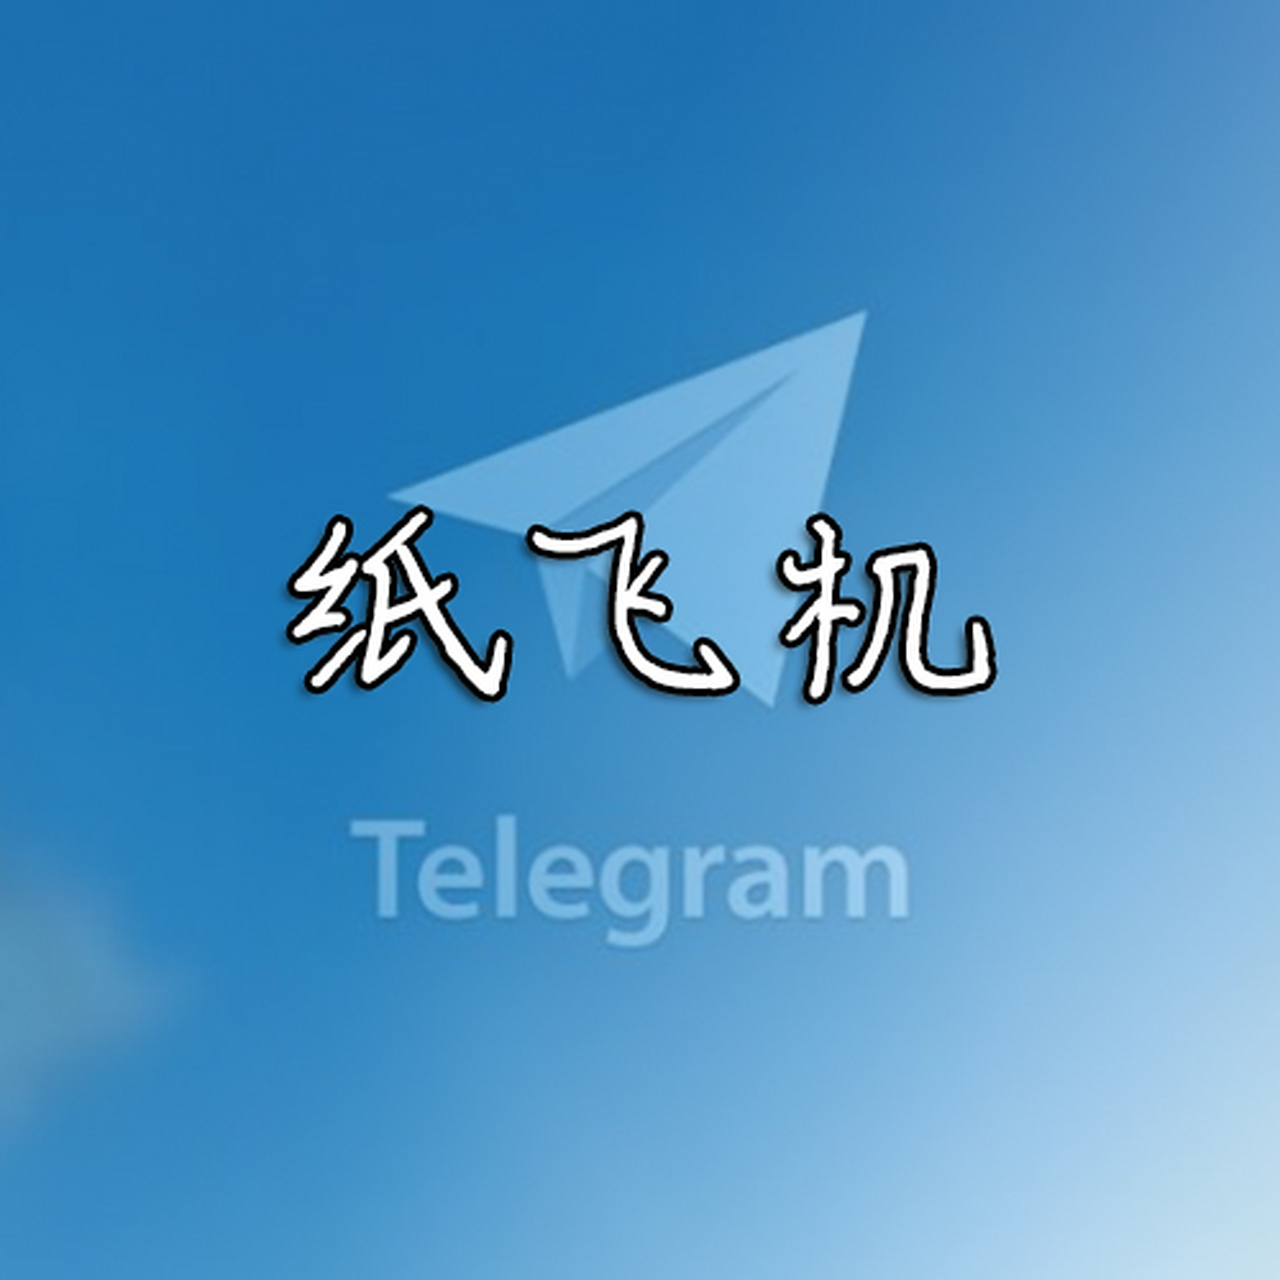 纸飞机下载中文版苹果手机_纸飞机下载中文版苹果手机能下载吗